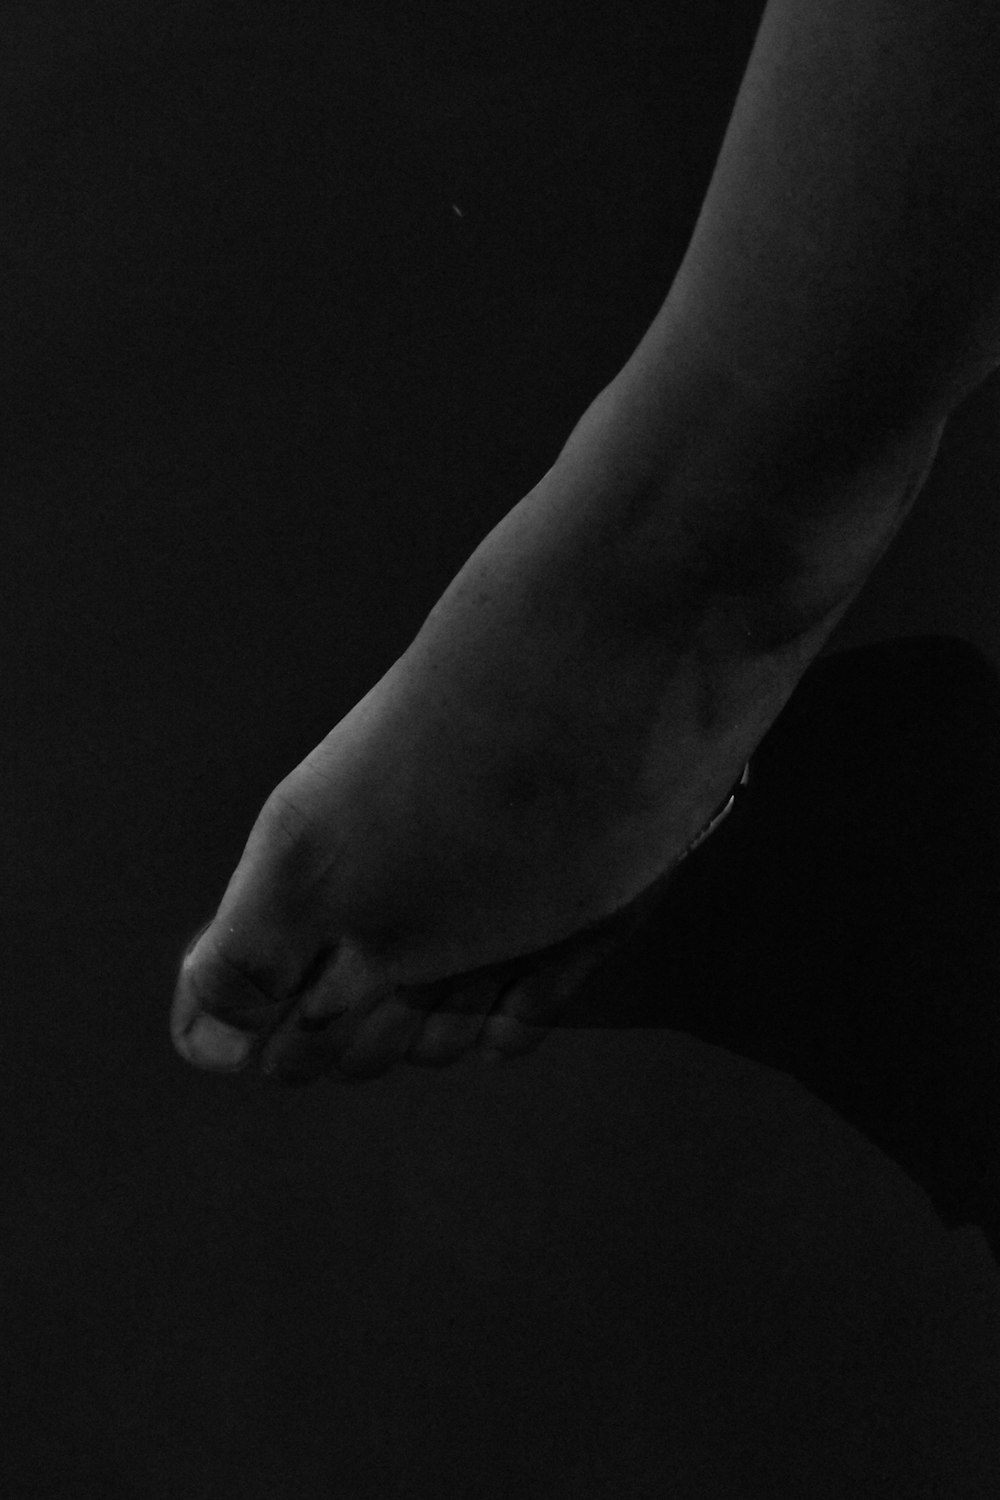 Una foto in bianco e nero del piede di una persona